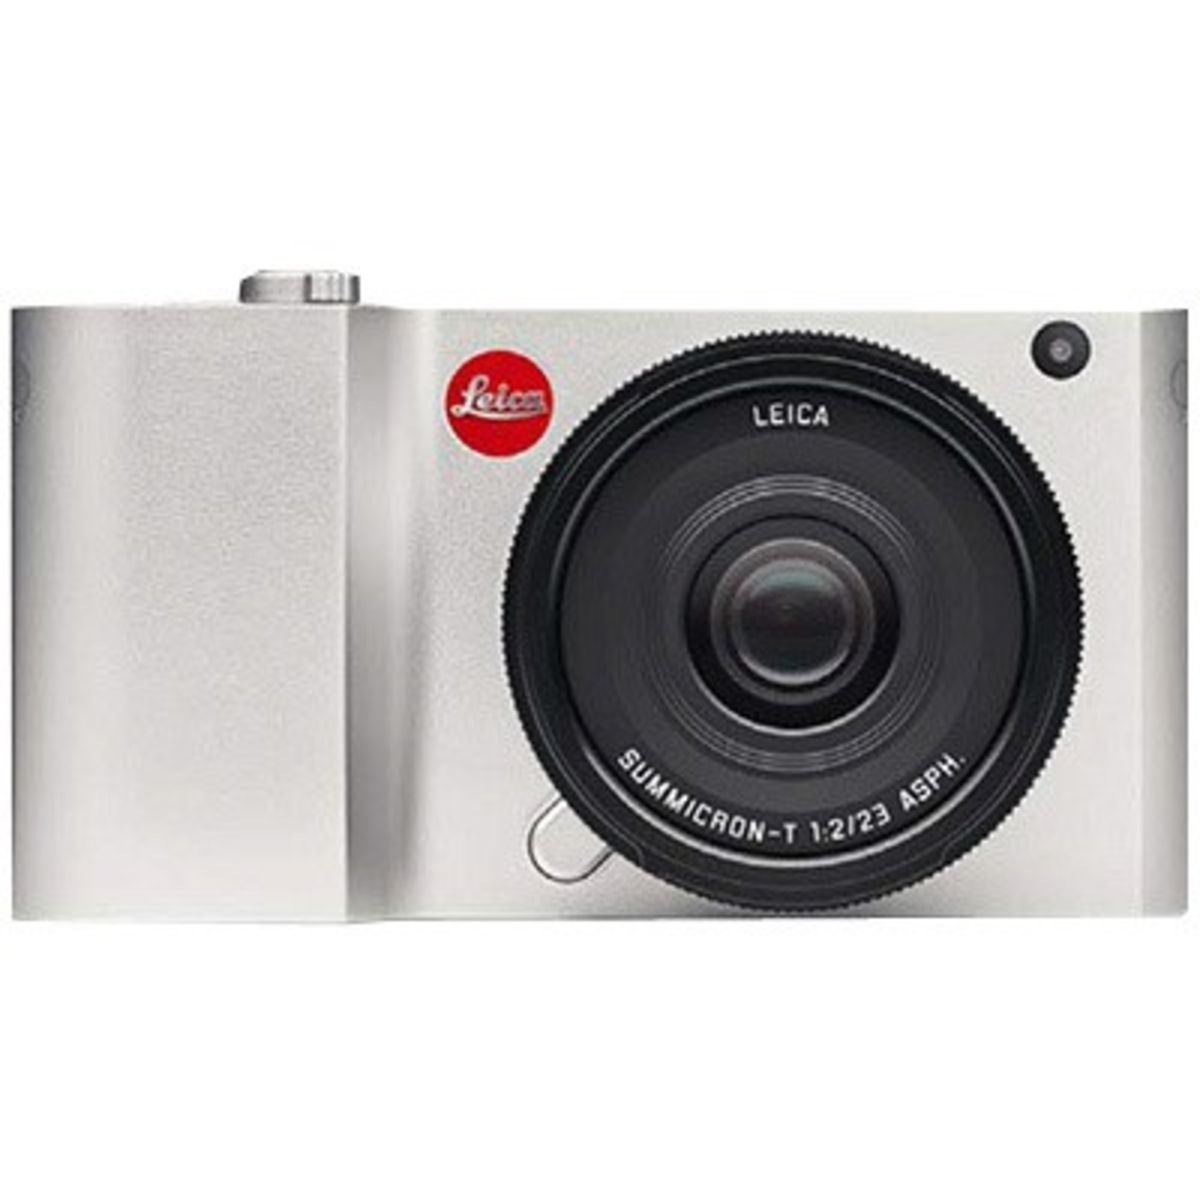 Leica T Typ 701 16MP Full HD SD